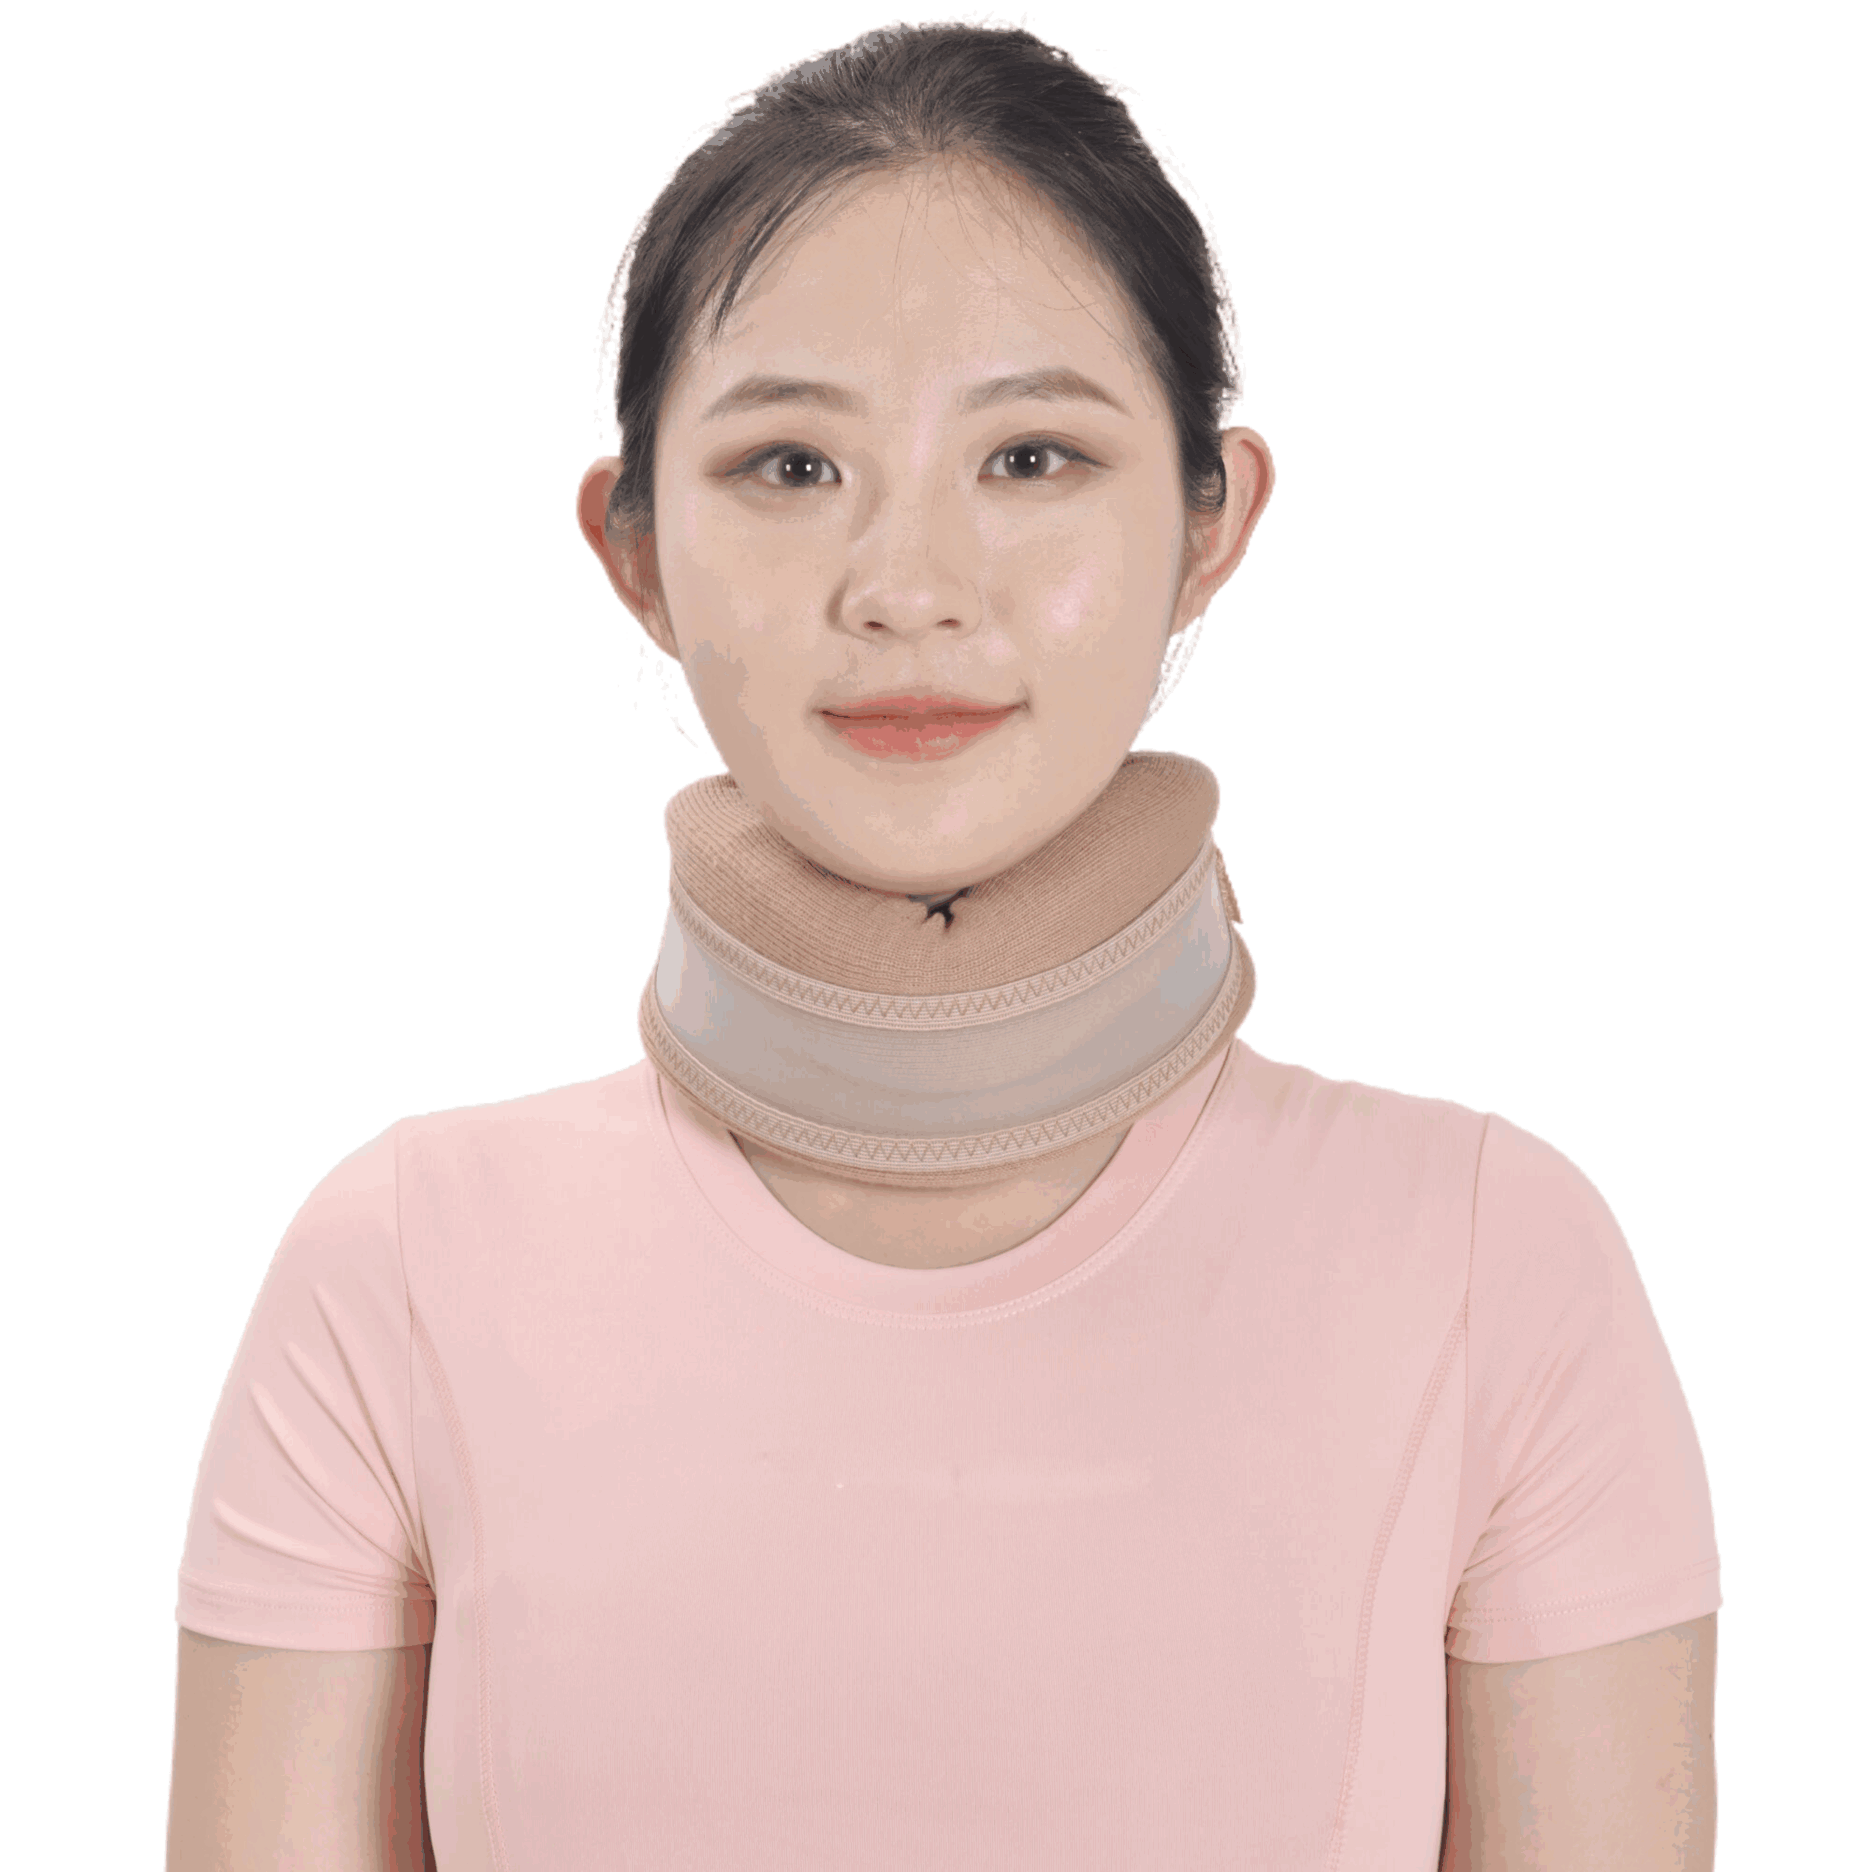 Wholesale Adjustable Cervical Collar Foam Neck Brace Support Orthopedic Support Soft